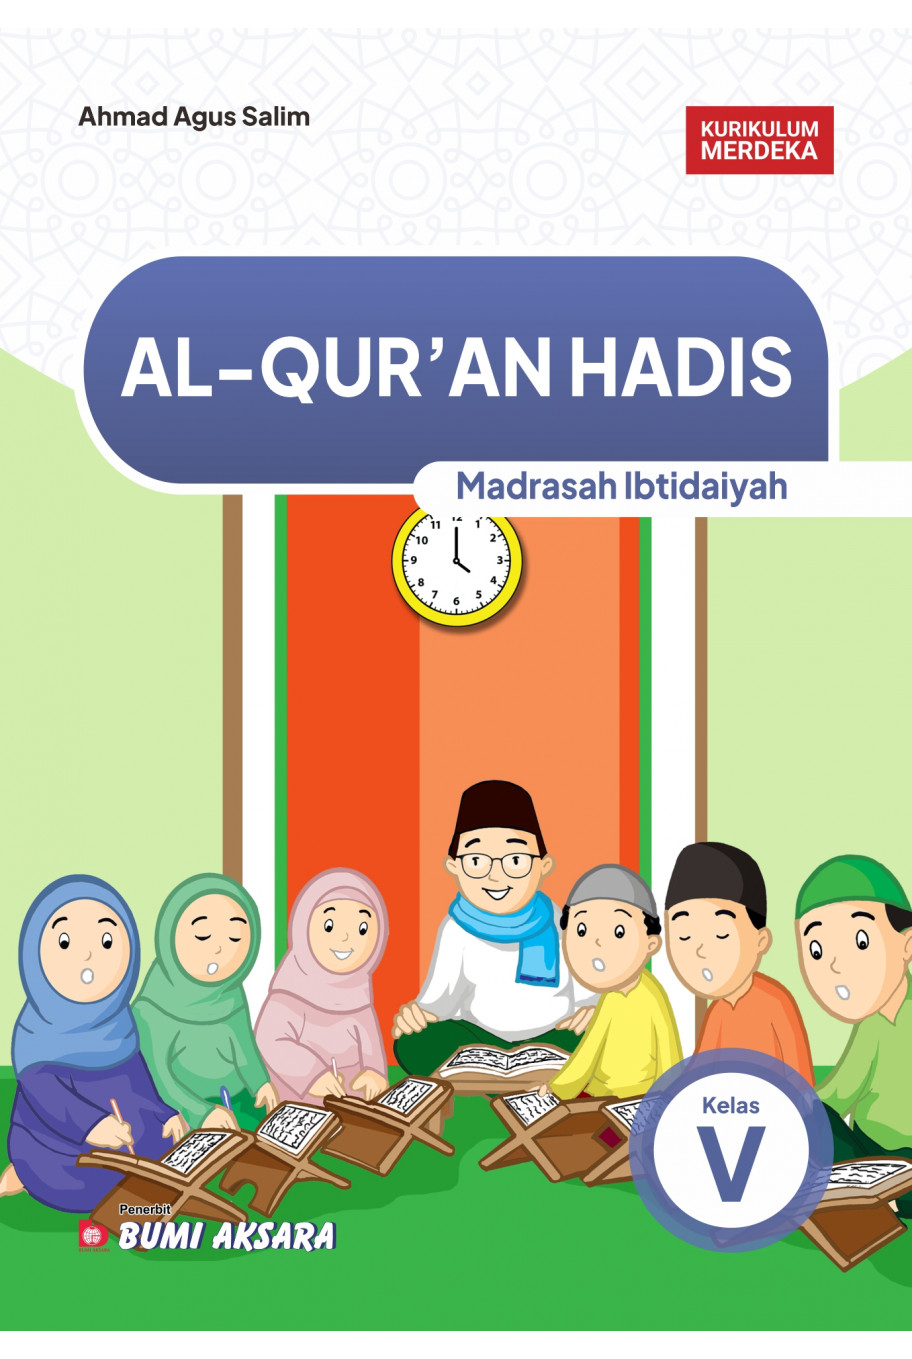 Al-Qur'an Hadis Madrasah Ibtidaiyah Kelas V